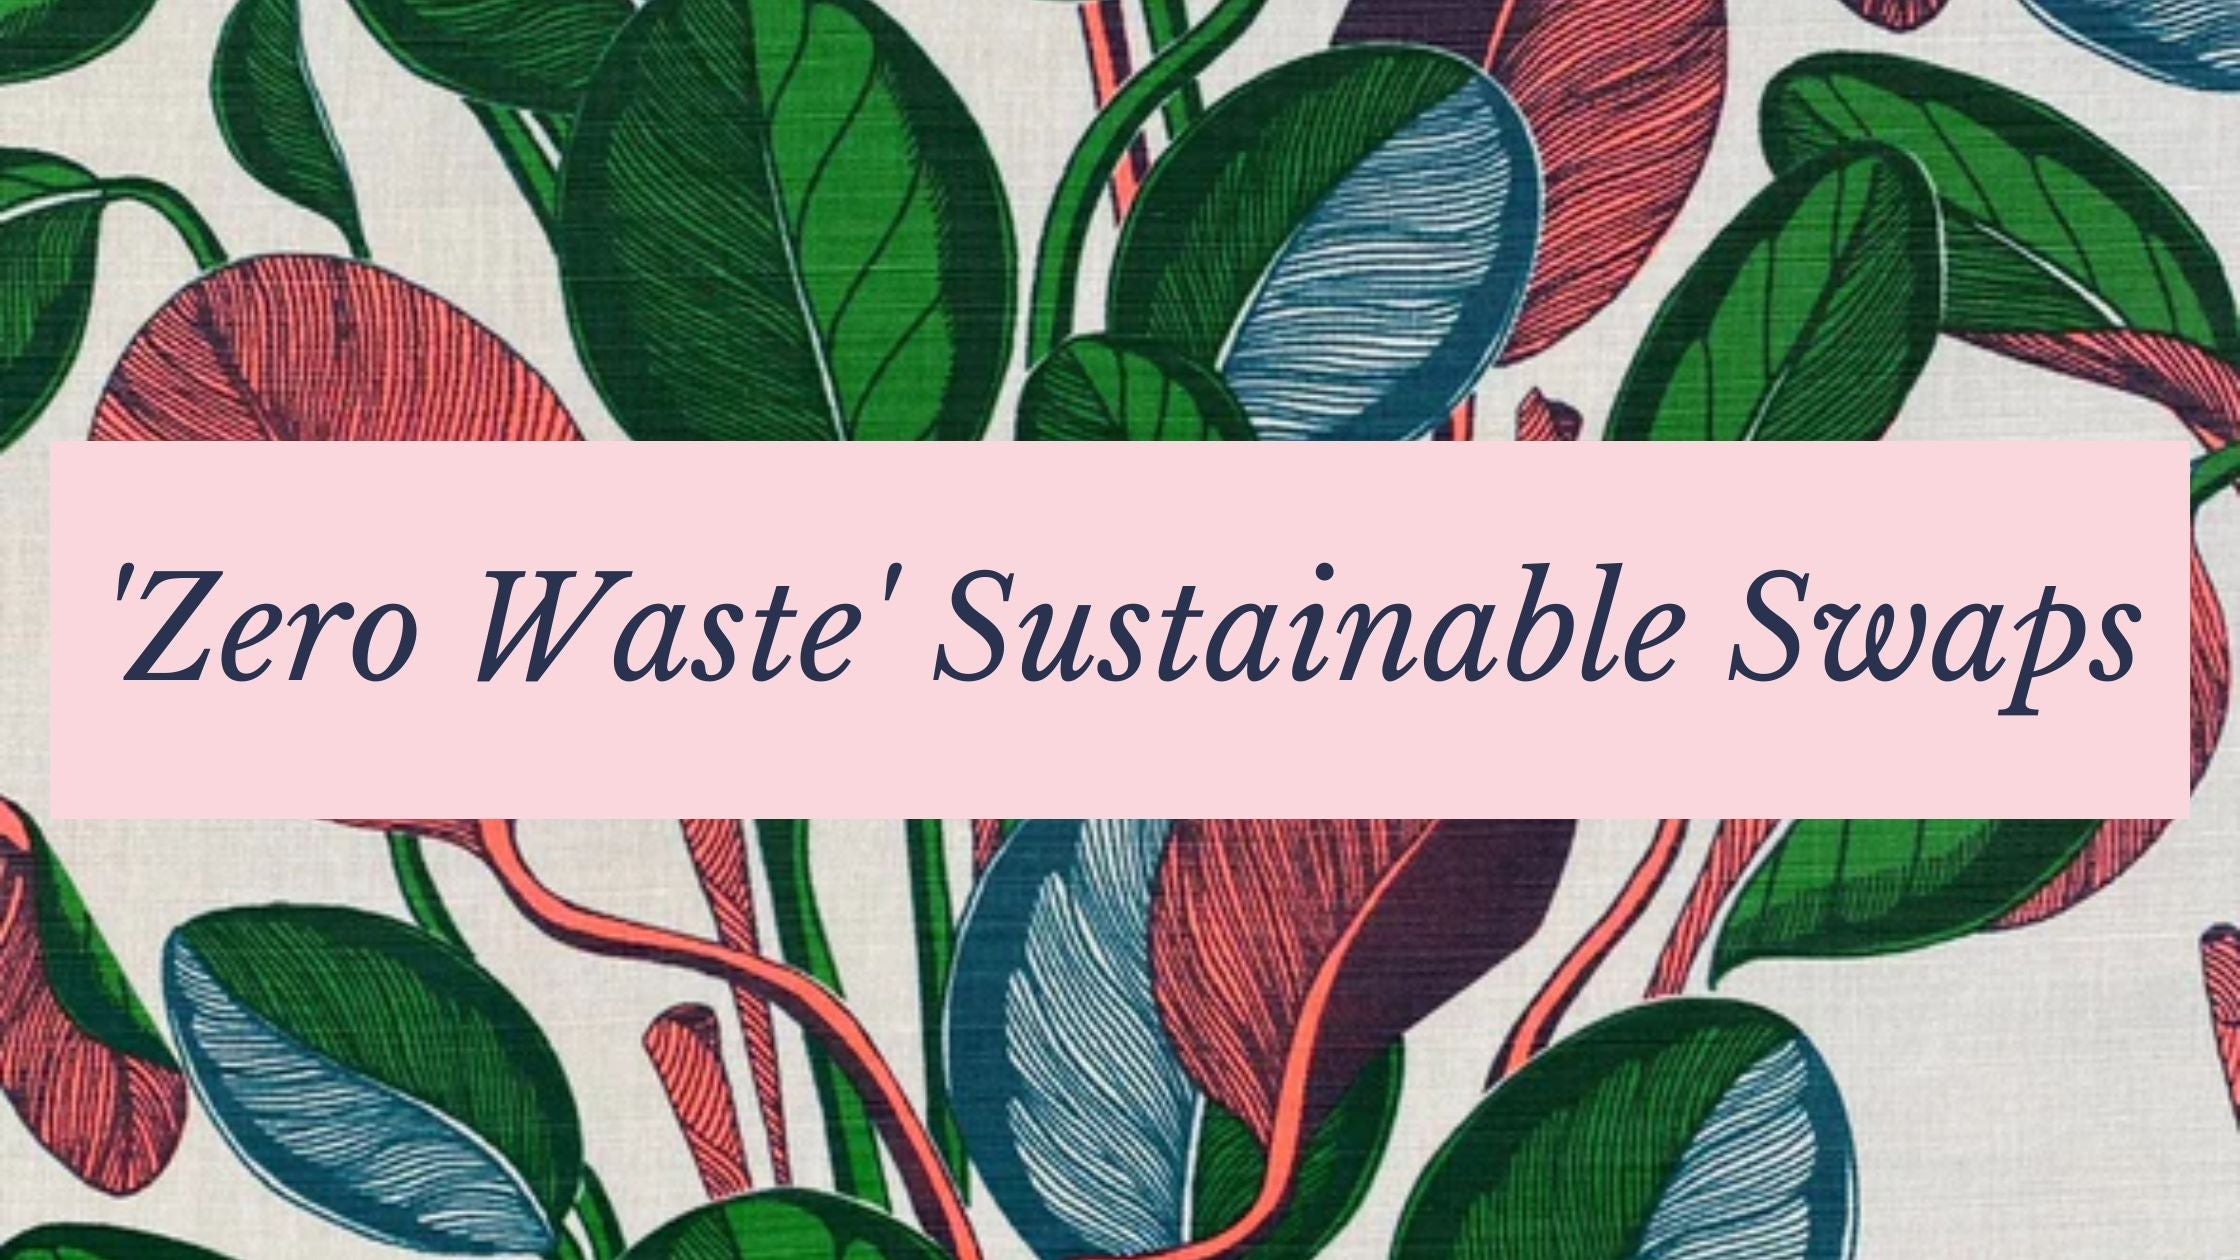 Haines' 'Zero Waste' Sustainable Swaps